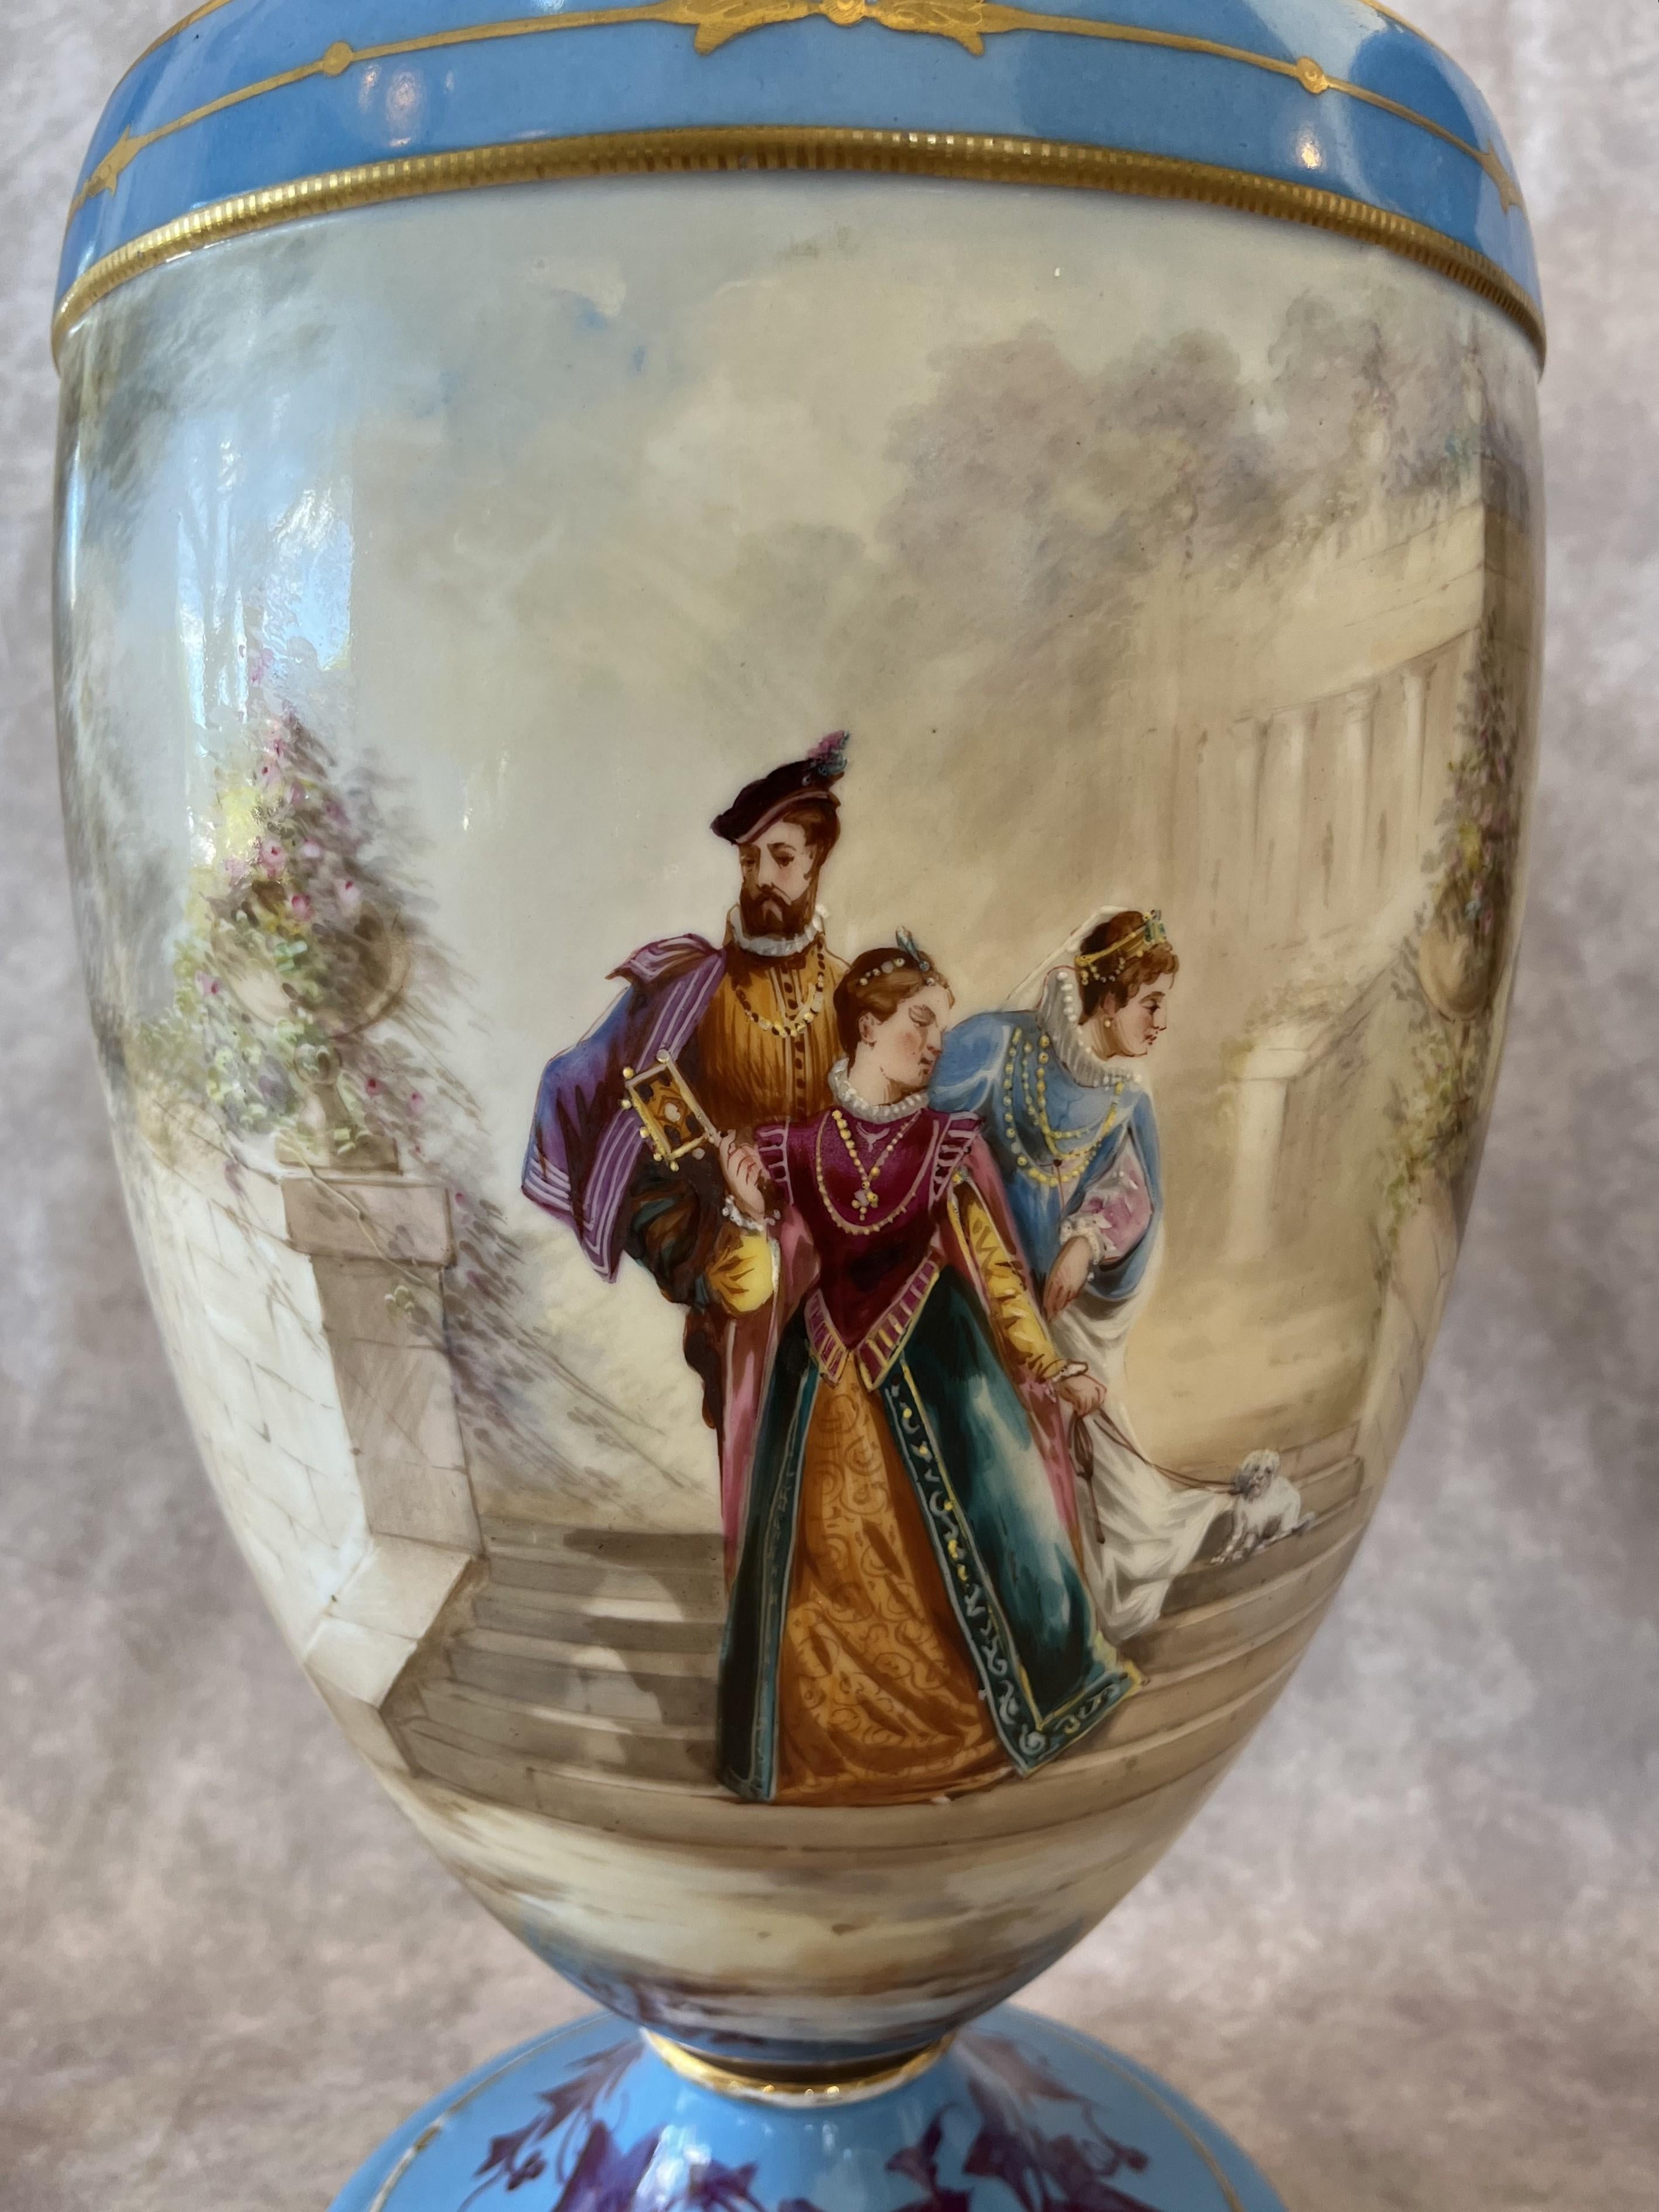 Dans le style de la manufacture de Sèvres, belle paire de vases en porcelaine avec des scènes peintes à la main sur un fond bleu clair.